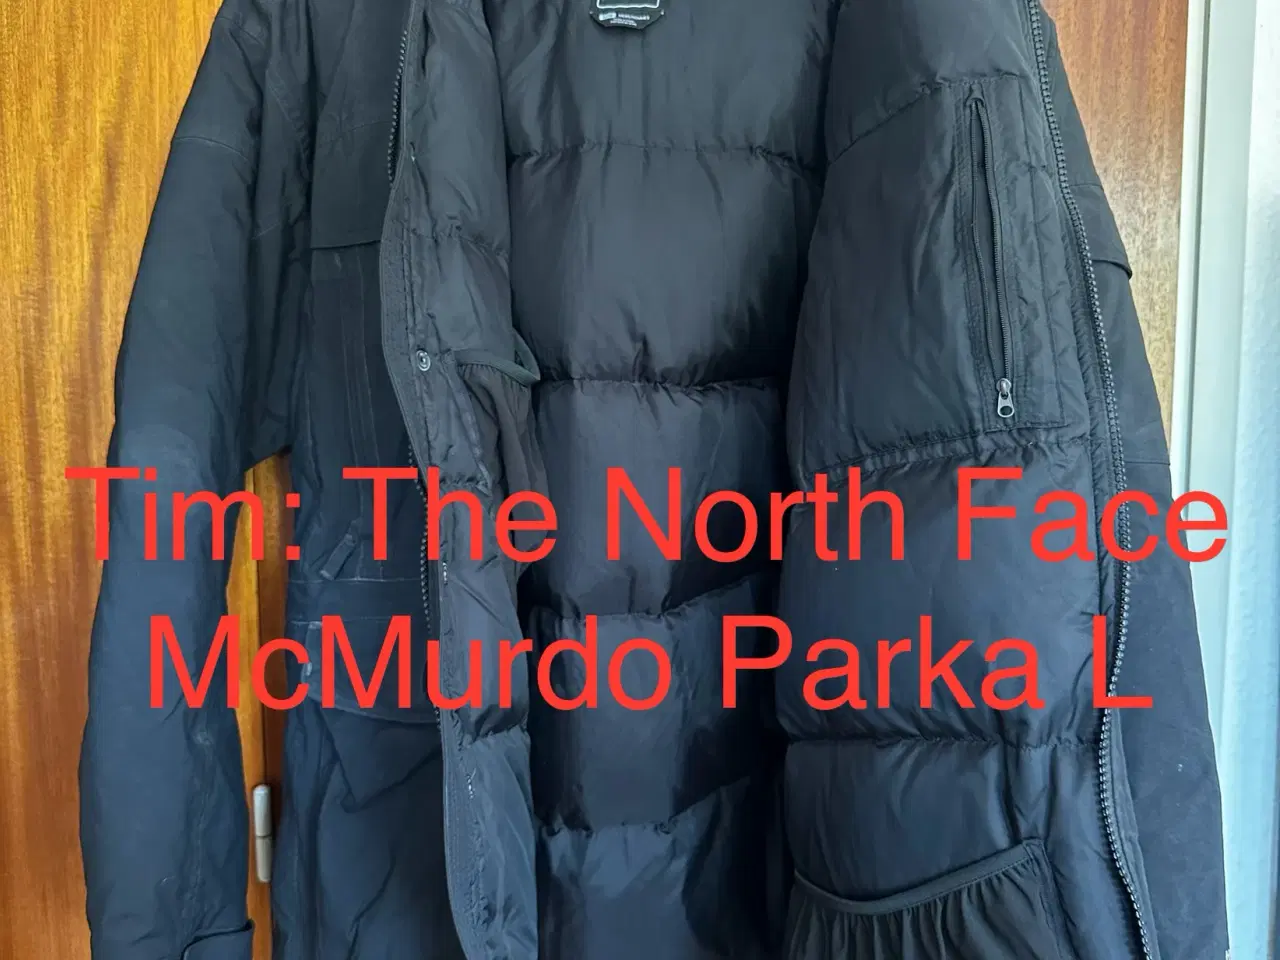 Billede 2 - The North Face McMurdo Parka L 